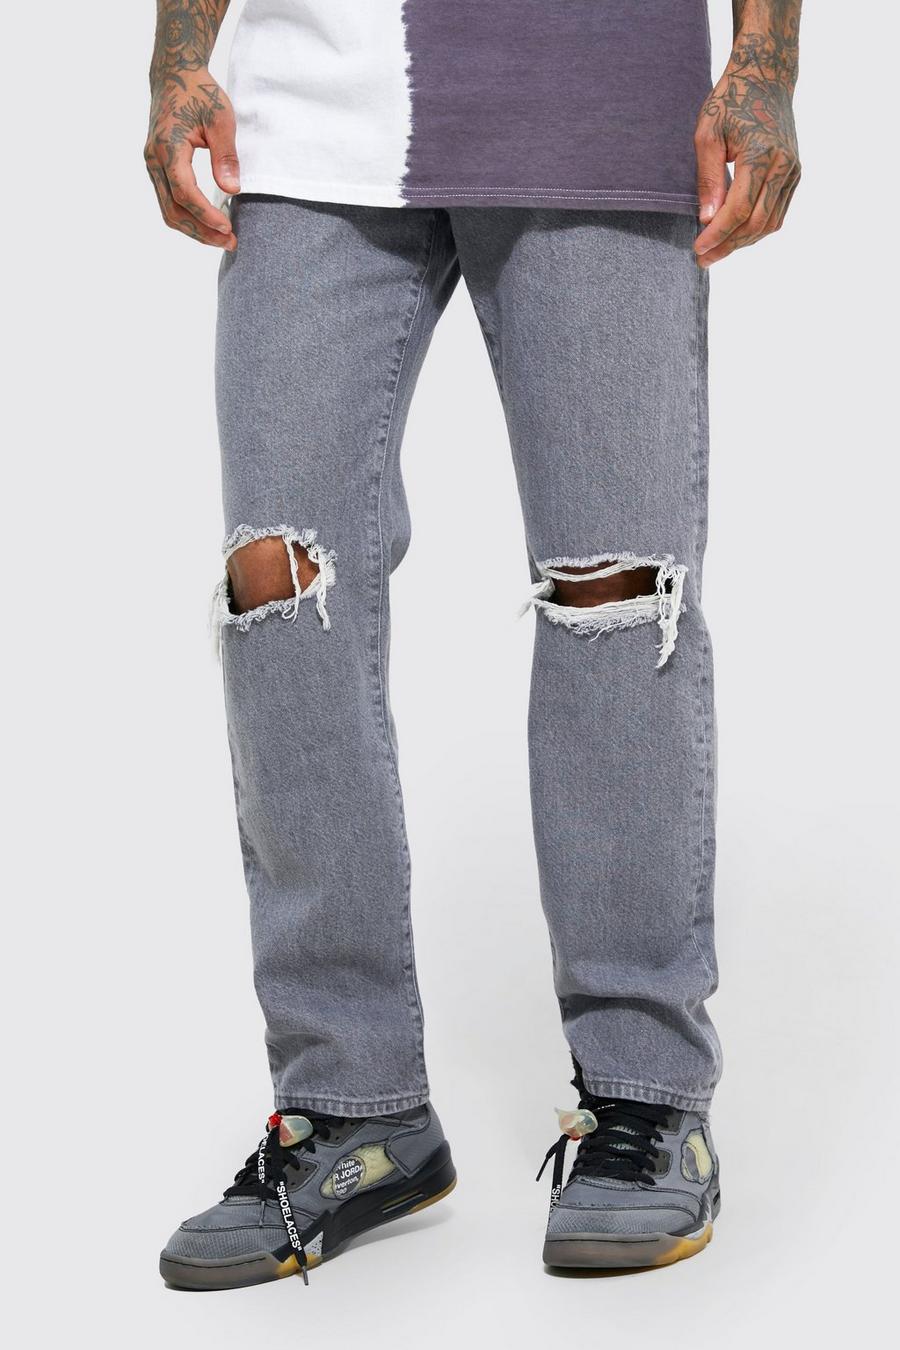 Lockere Jeans mit Riss am Knie, Grey gris